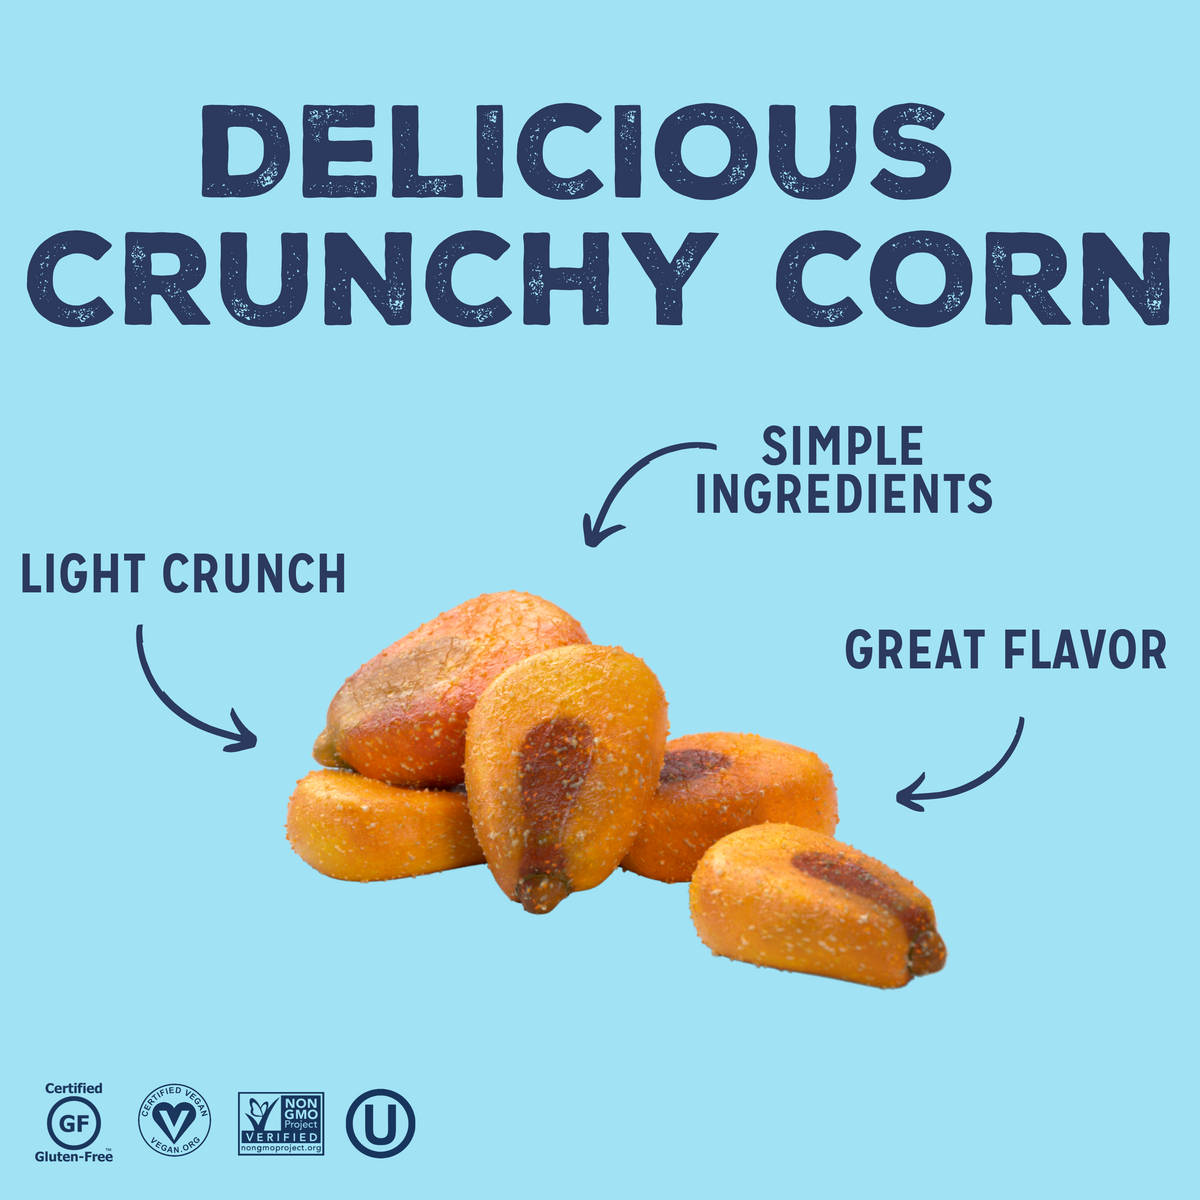 Delicious Crunchy Corn Graphic